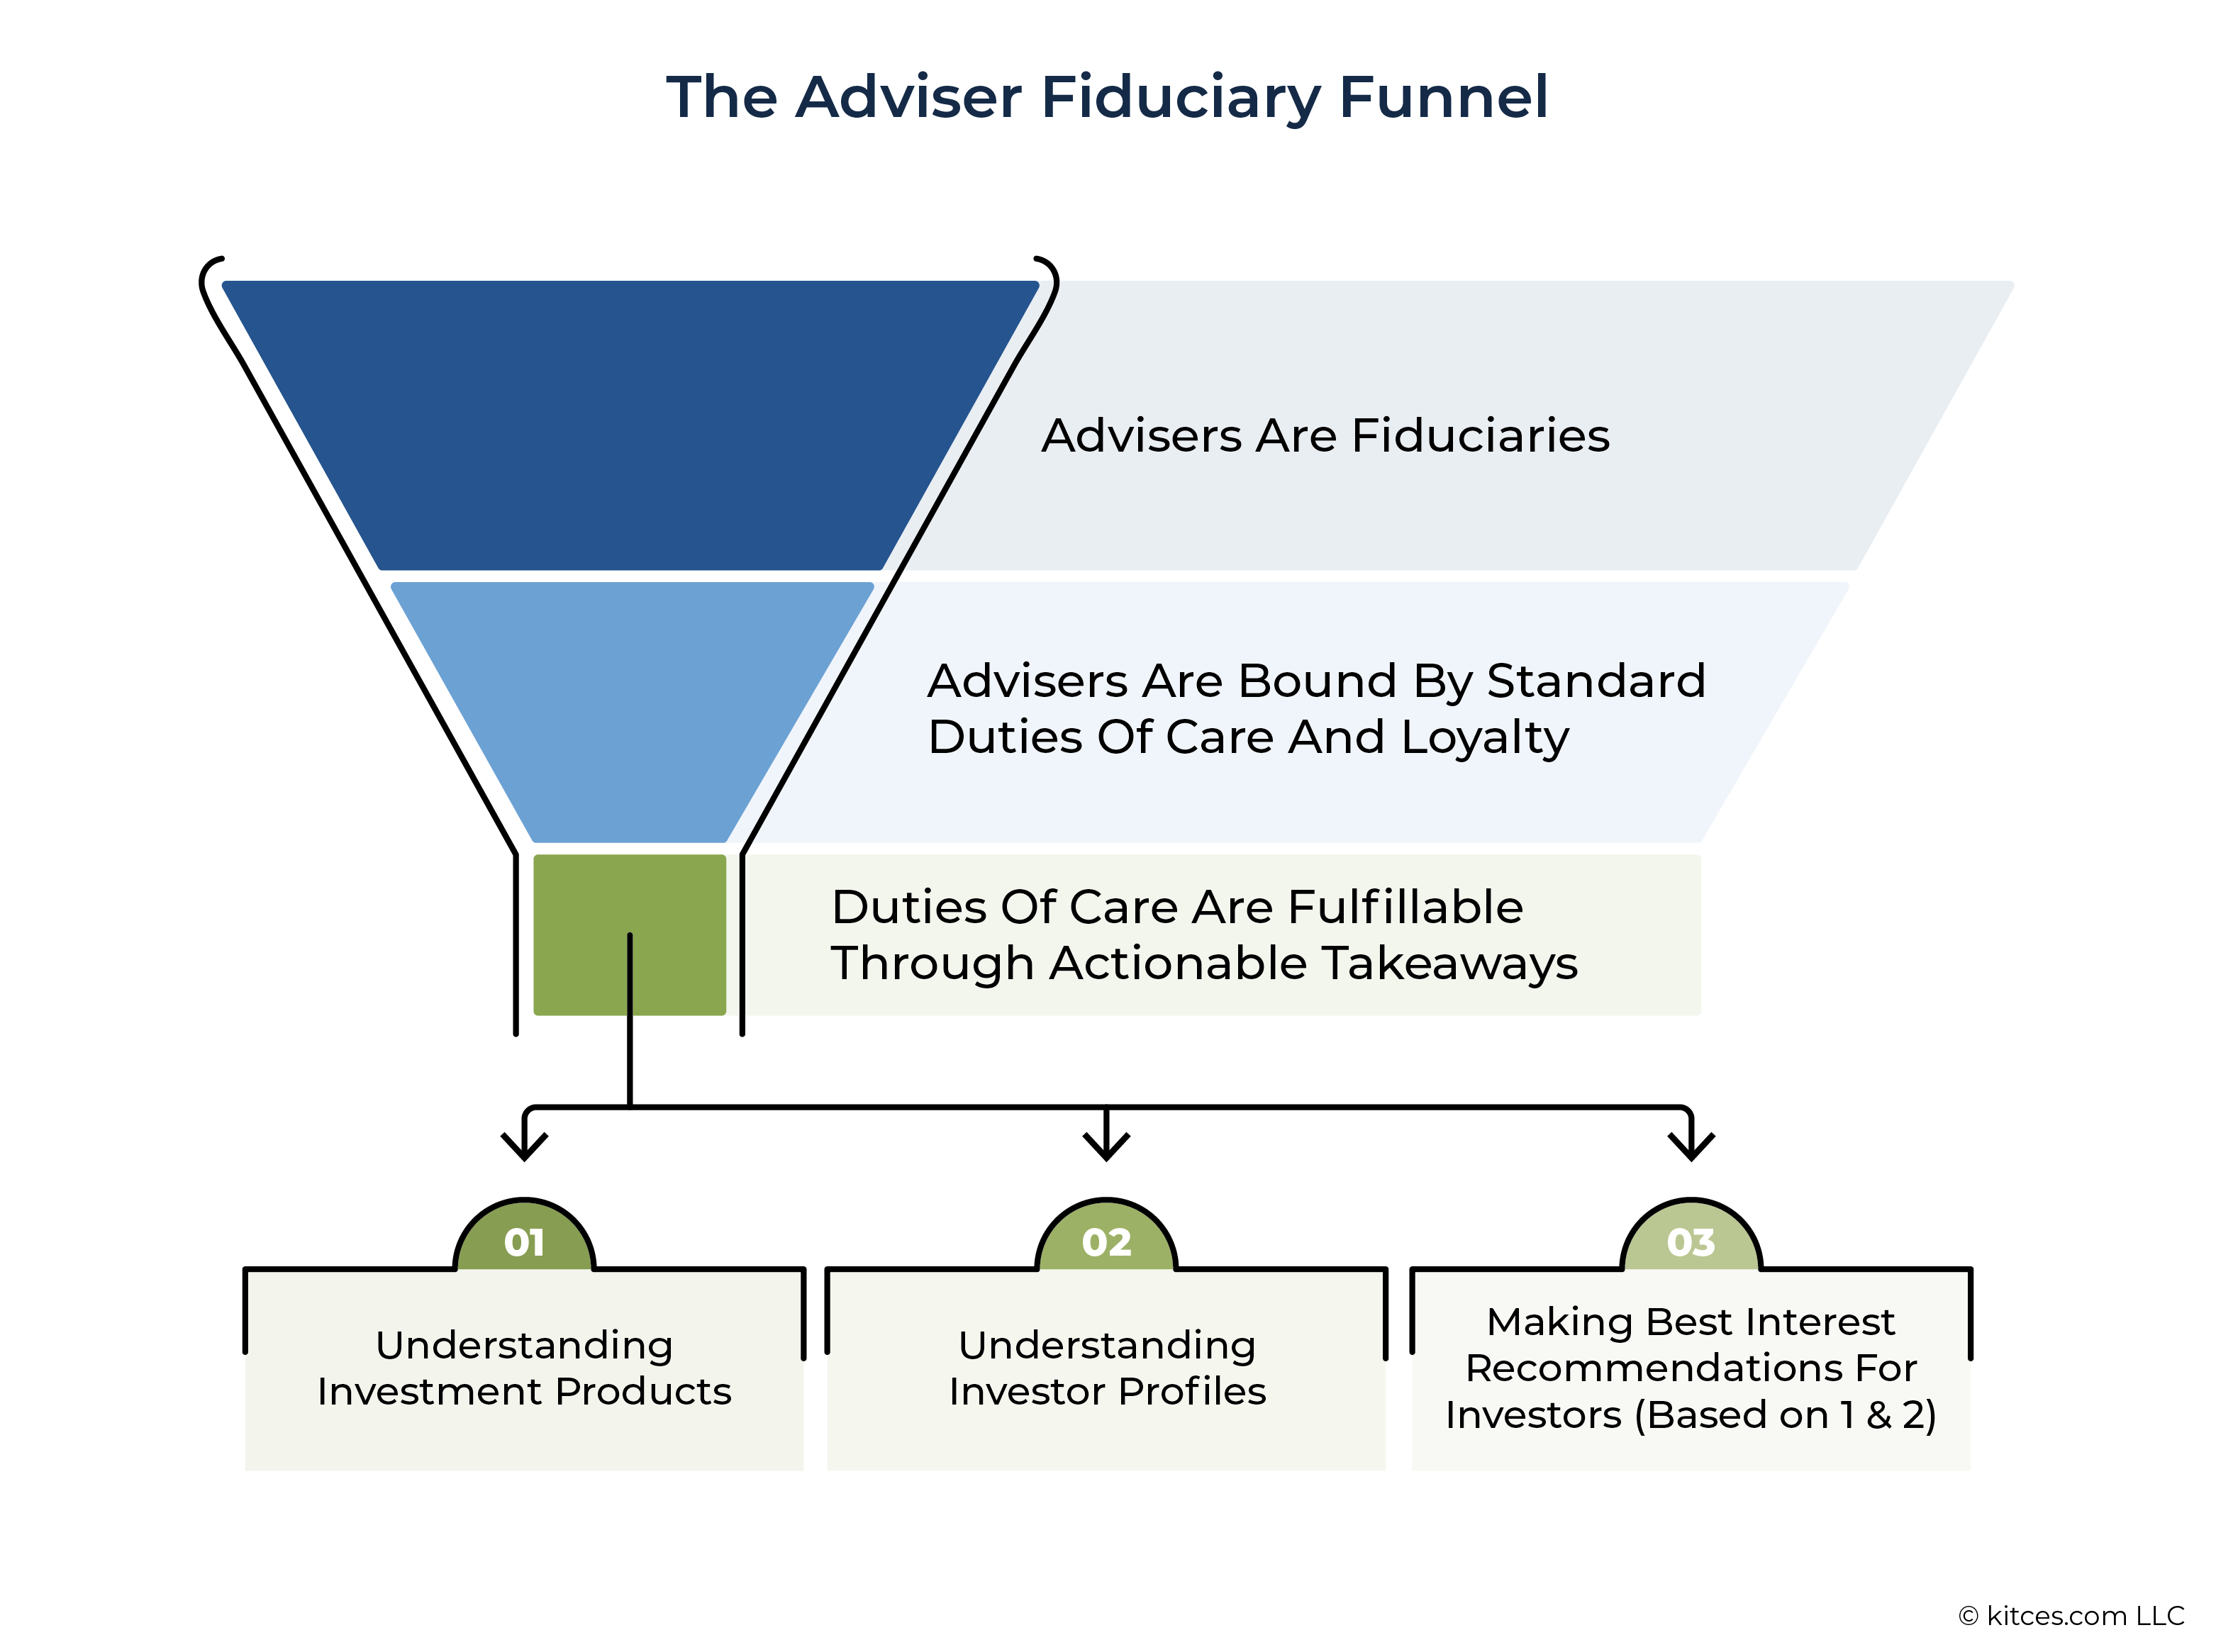 The Adviser Fiduciary Funnel; RIA standard of care